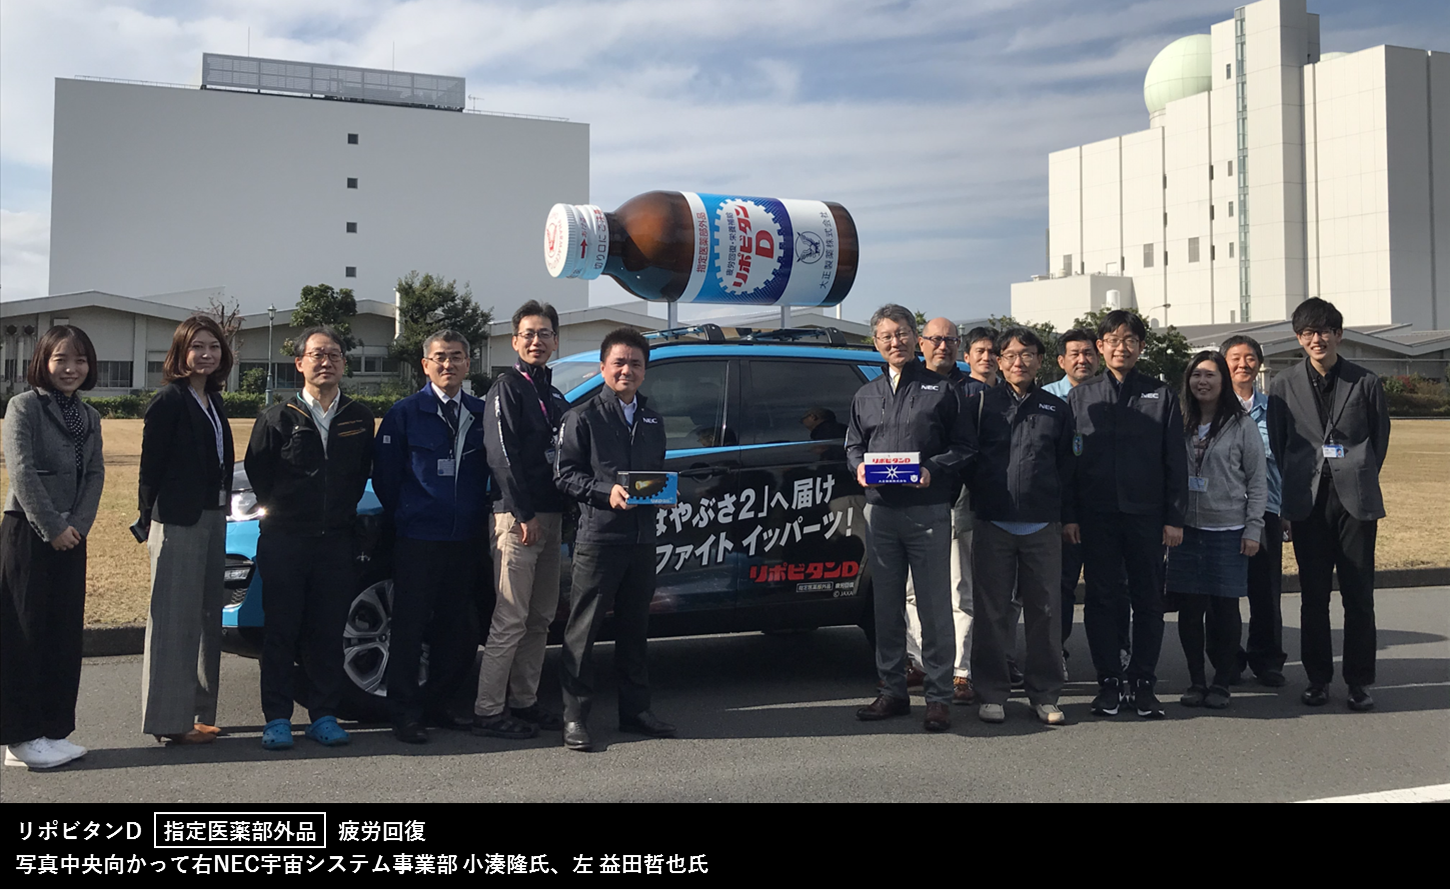 NEC（日本電気株式会社）の技術者の皆様と一緒に成功祈願！